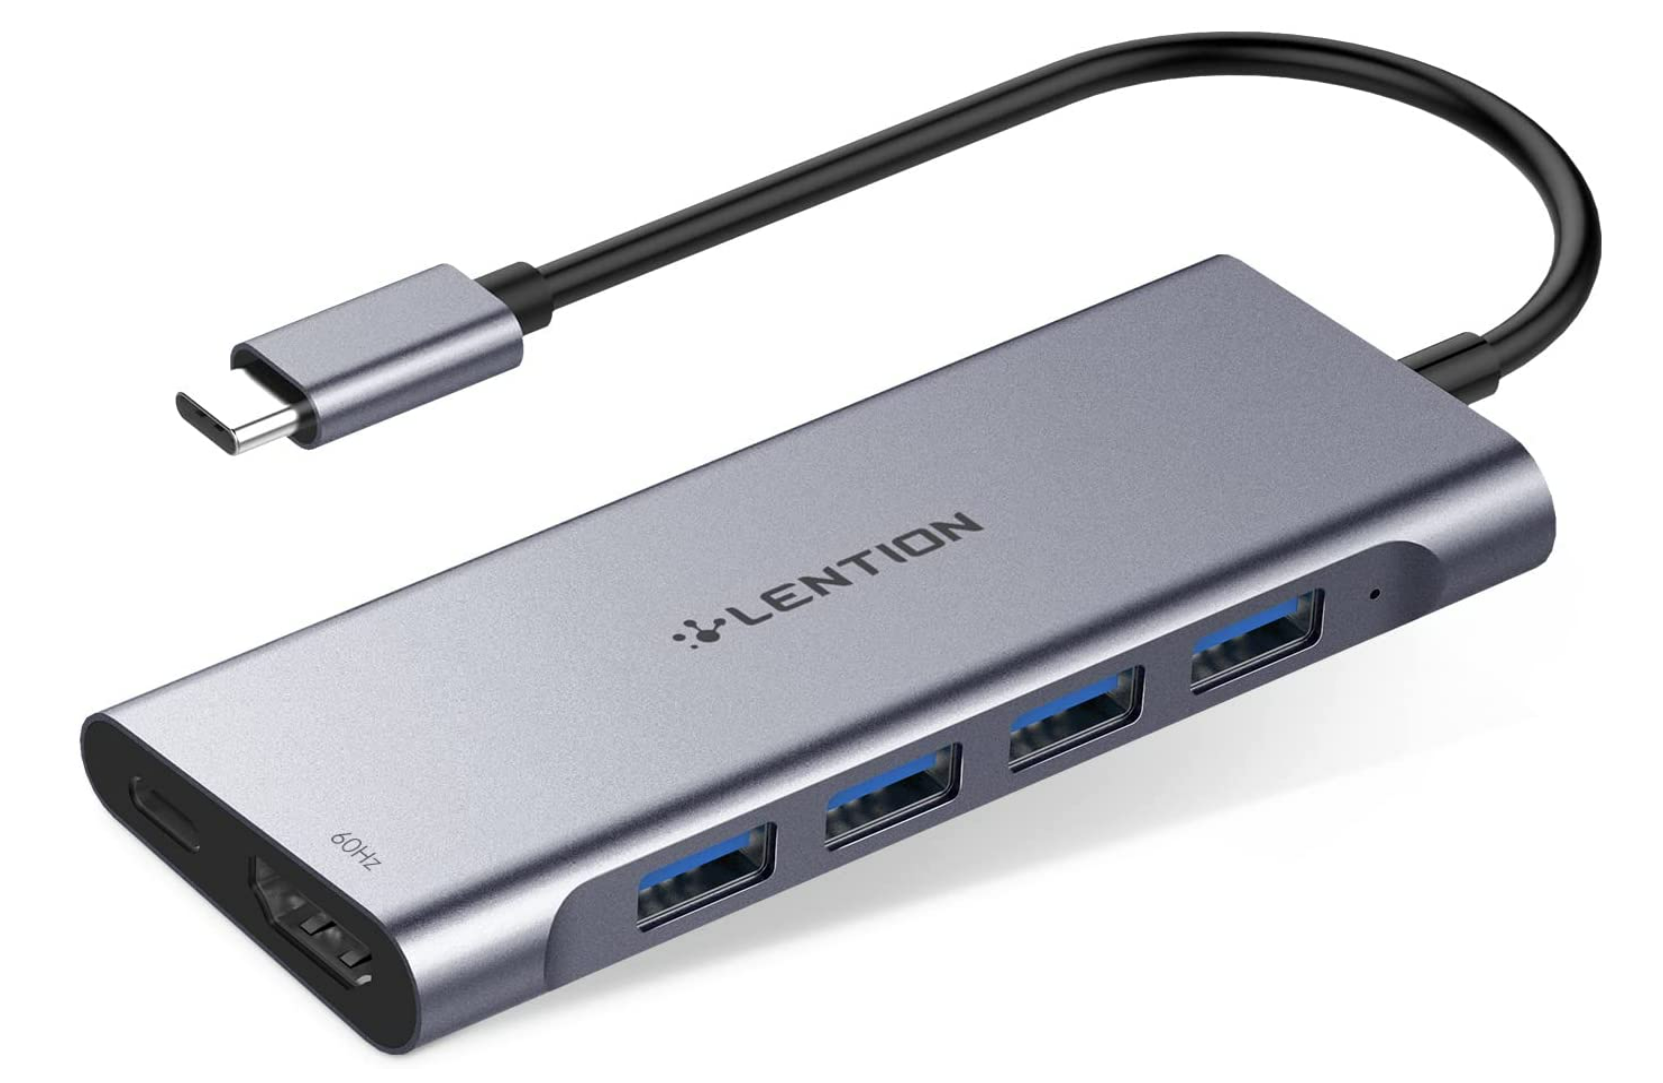 4K Çıkışlı Lention USB-C Hub (CB-C35sH) - 4K/60 çıkışlı en uygun fiyatlı USB-C hub